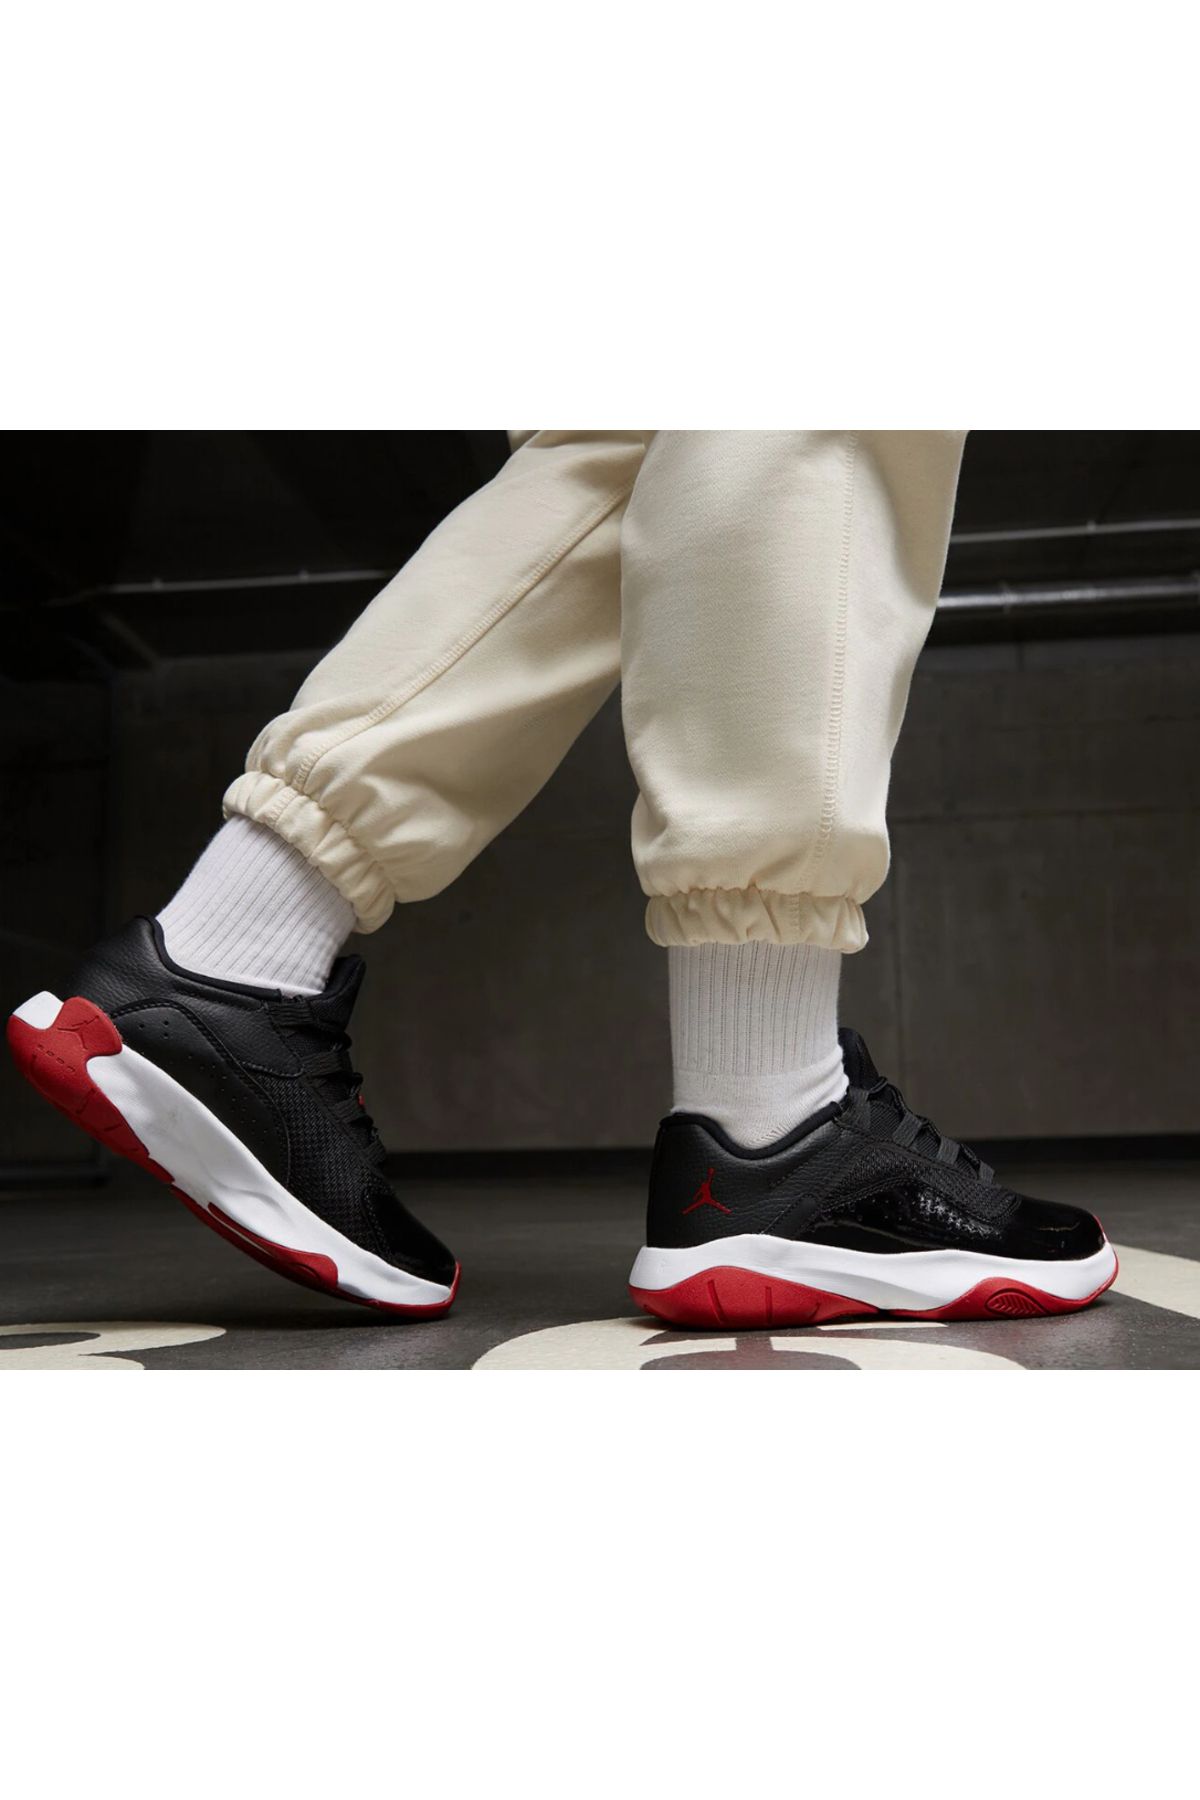 Nike Jordan 11 CMFT Low